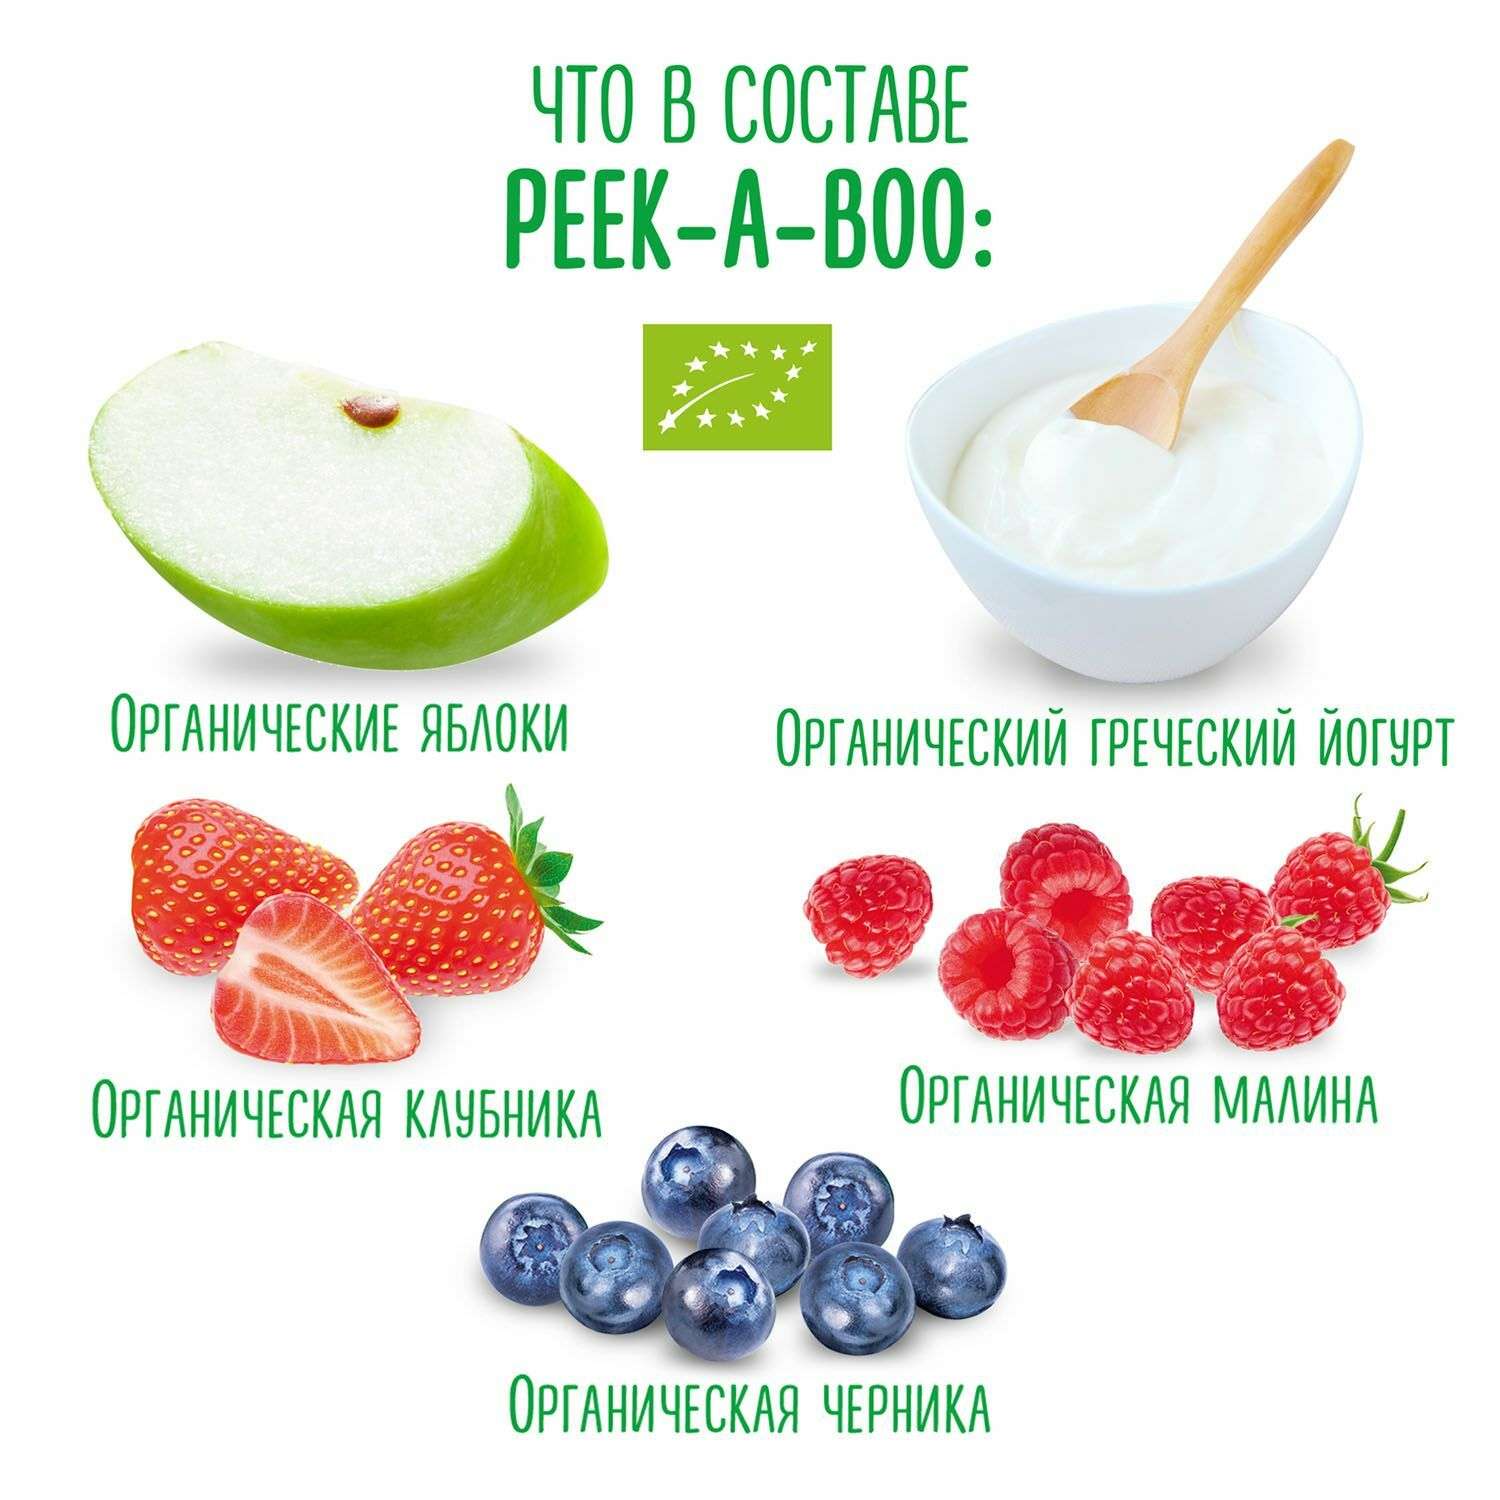 Пюре Peek-a-boo йогурт с ягодами 113г с 6месяцев - фото 3